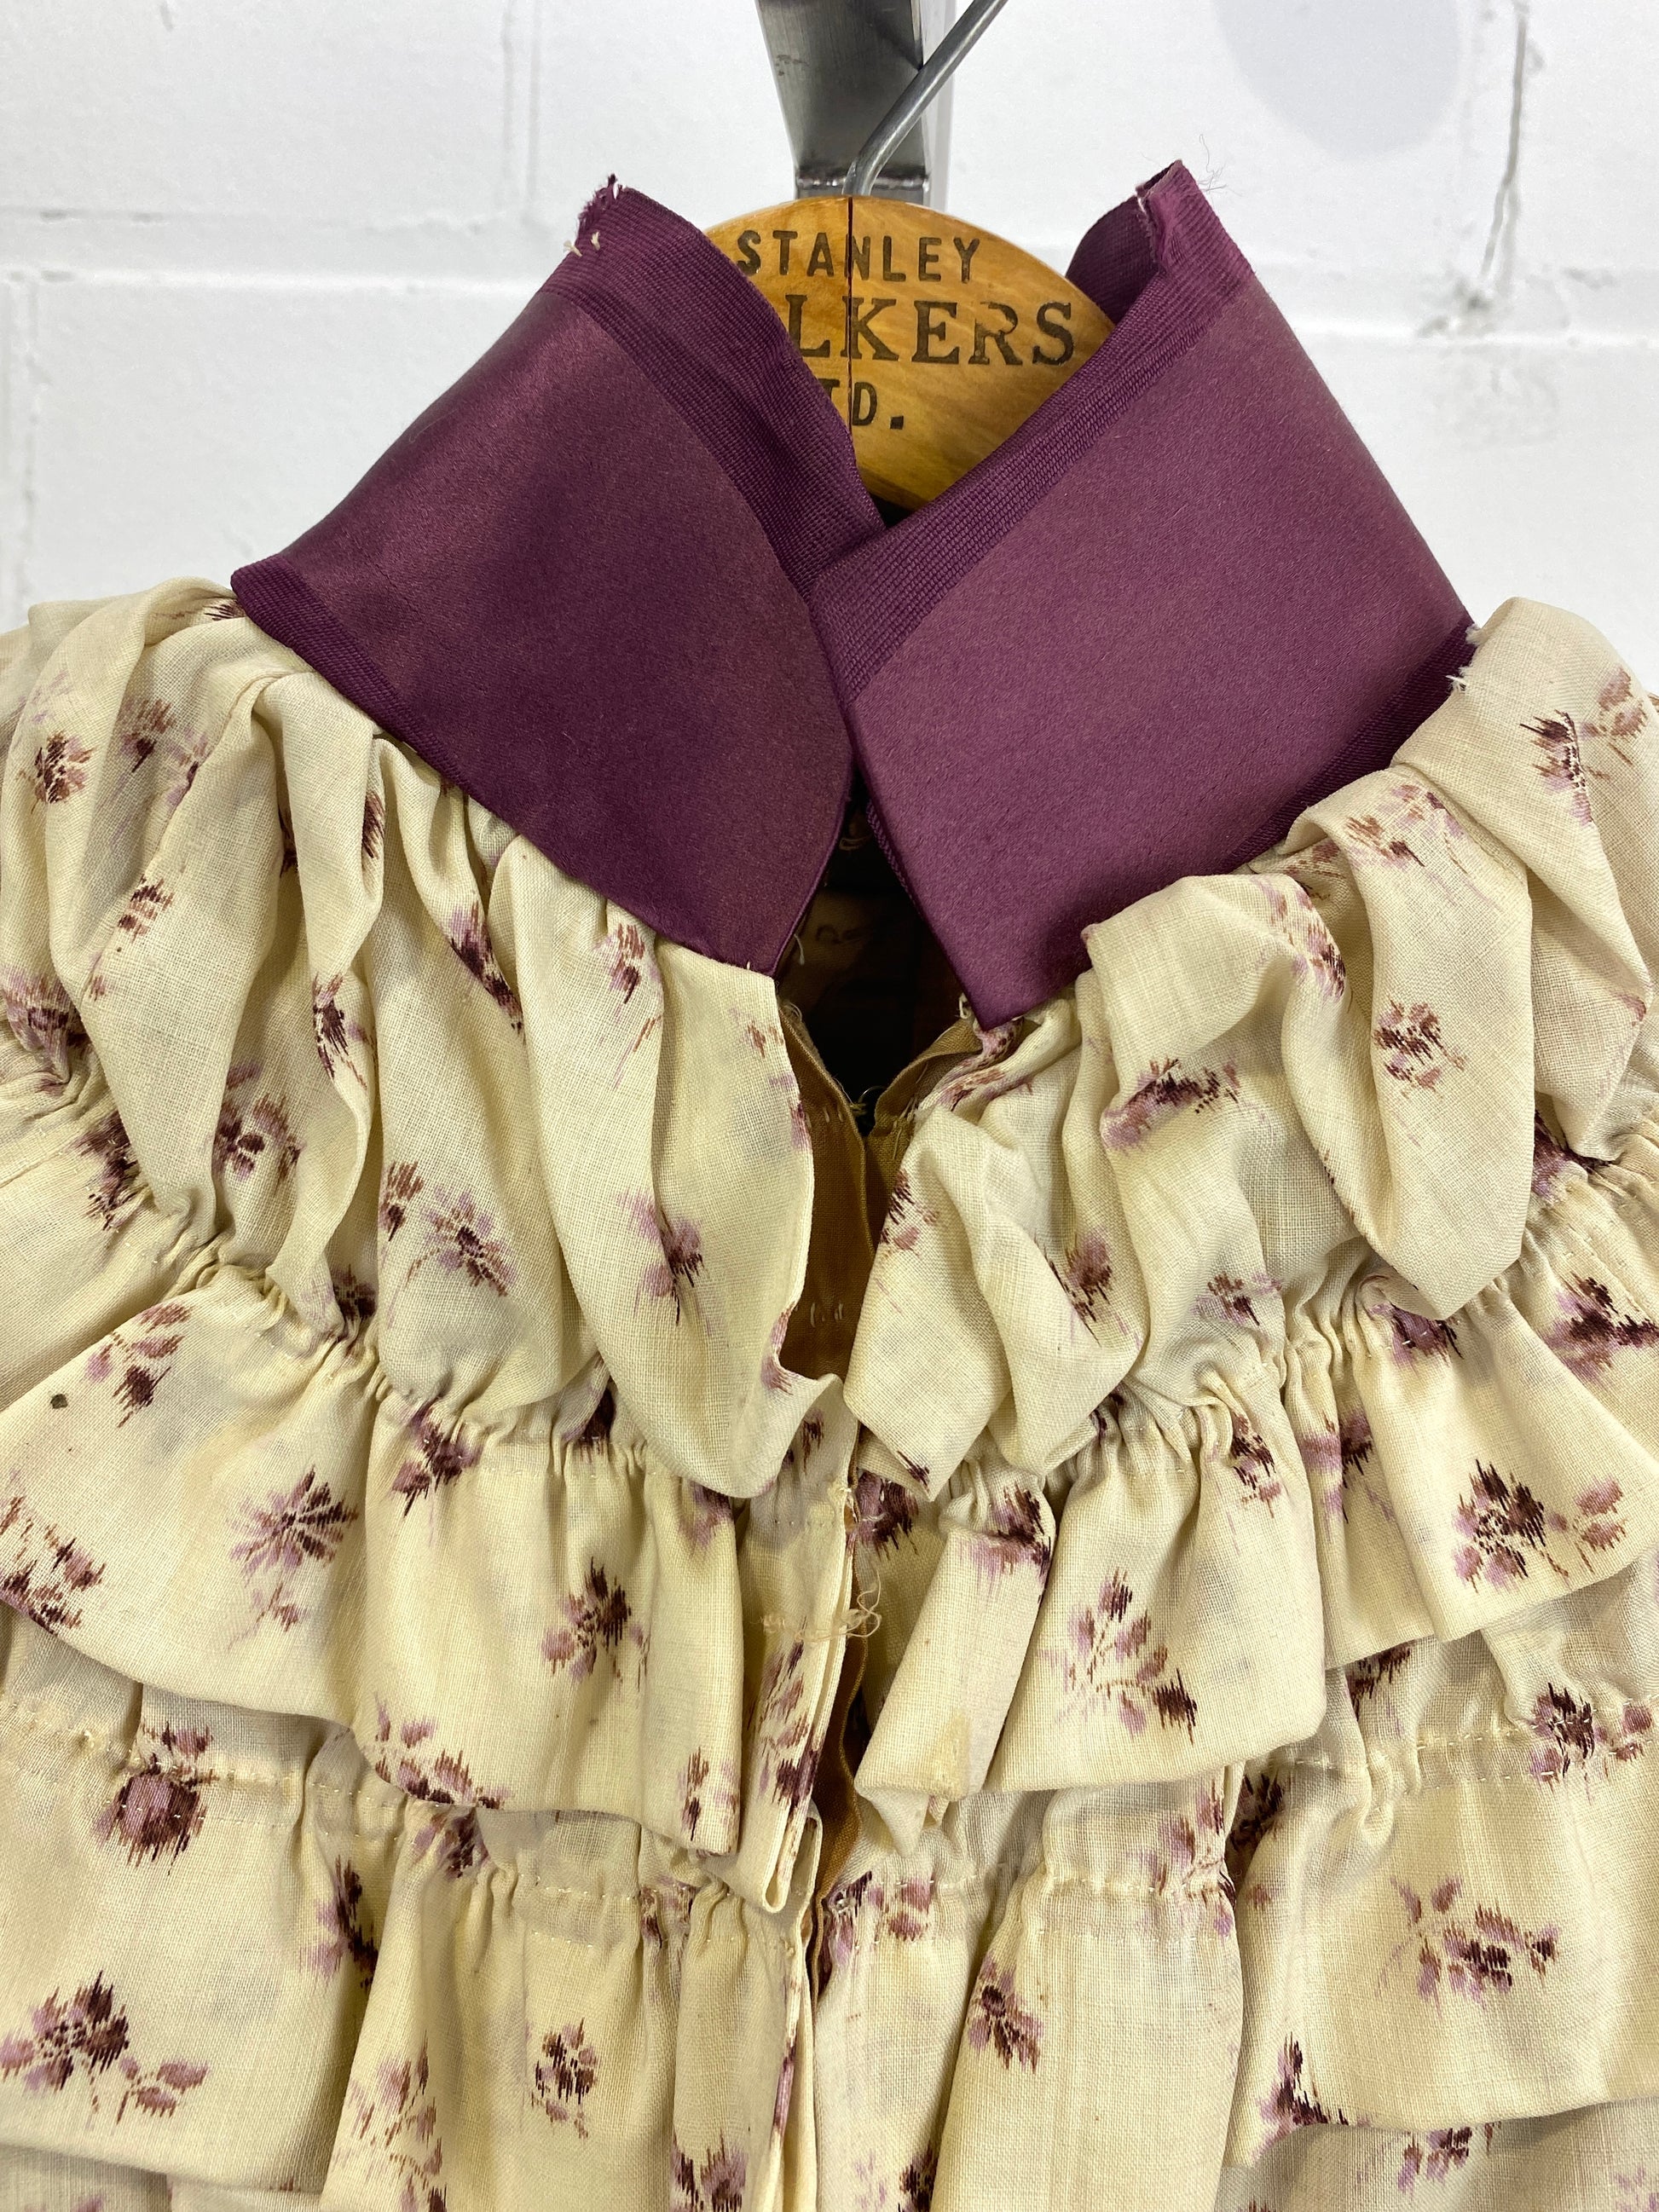 Collar close-up of Antique Victorian Cream & Lavender Floral Bodice